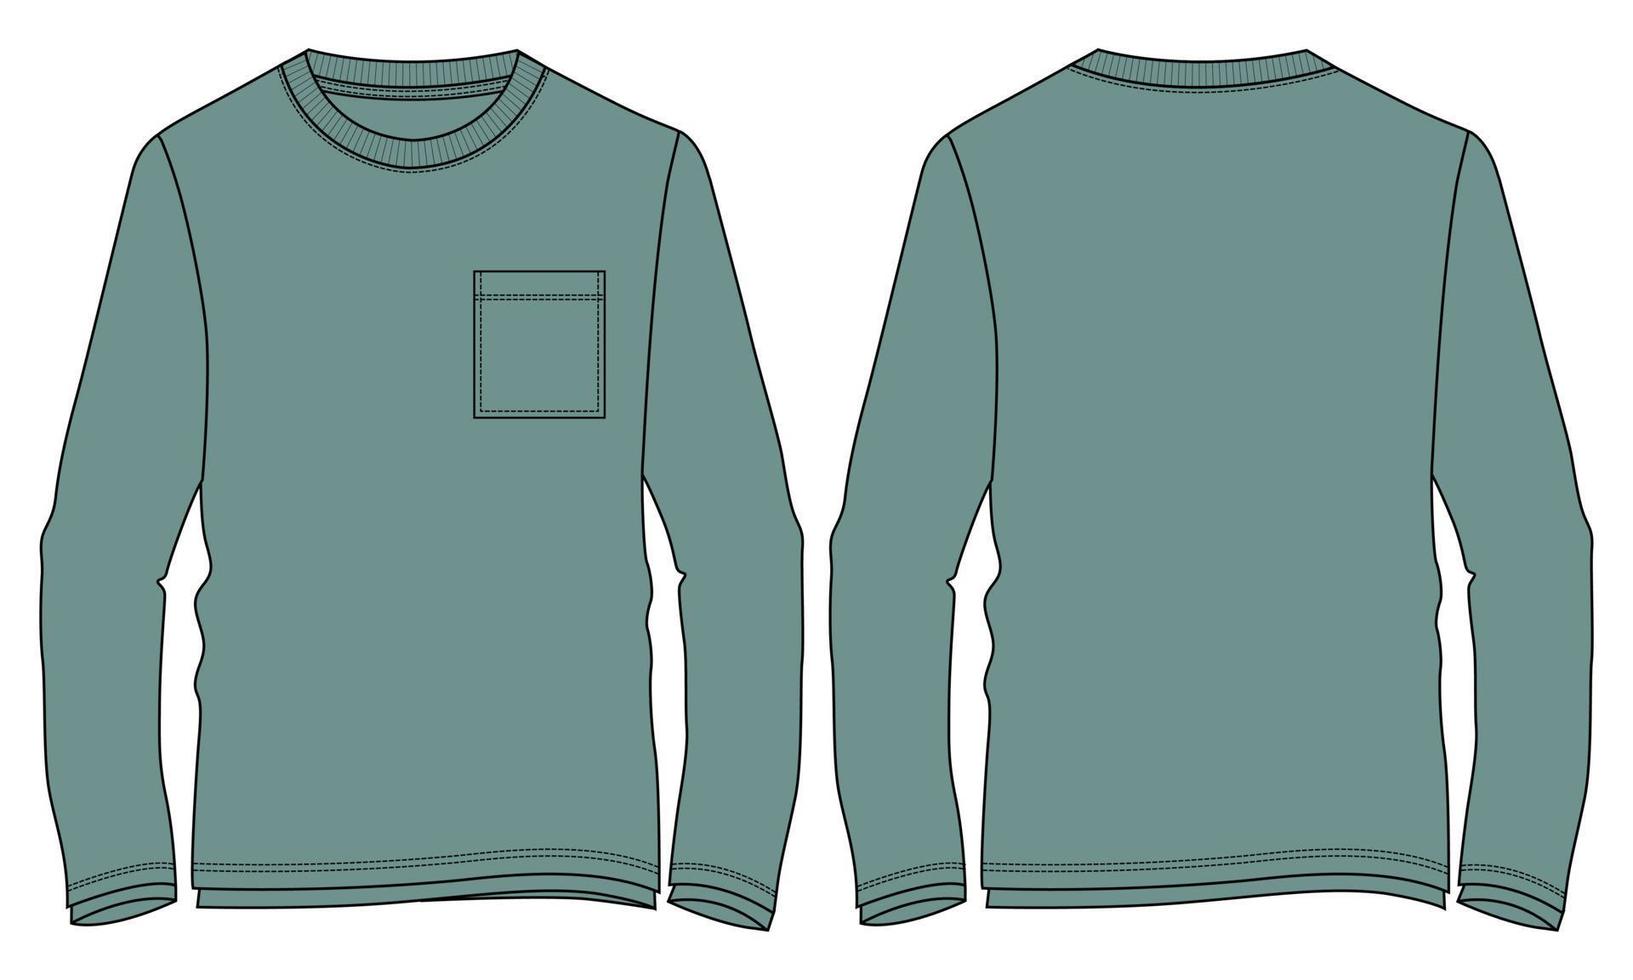 t-shirt a maniche lunghe tecnica moda schizzo piatto illustrazione vettoriale modello di colore verde